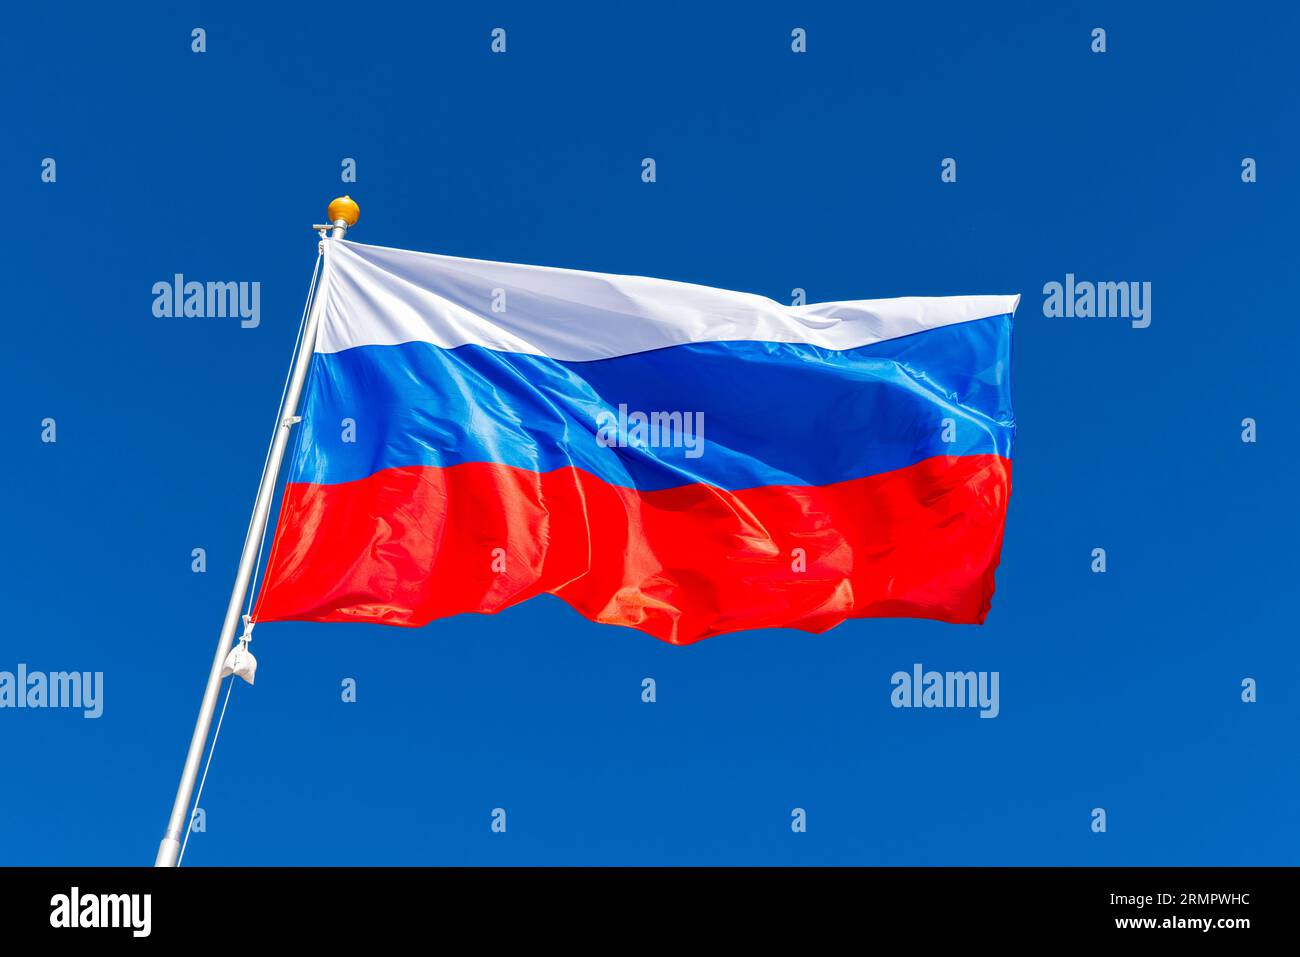 Le drapeau national de la Russie, le drapeau d'État de la Fédération de Russie est sur un mât sous le ciel bleu Banque D'Images